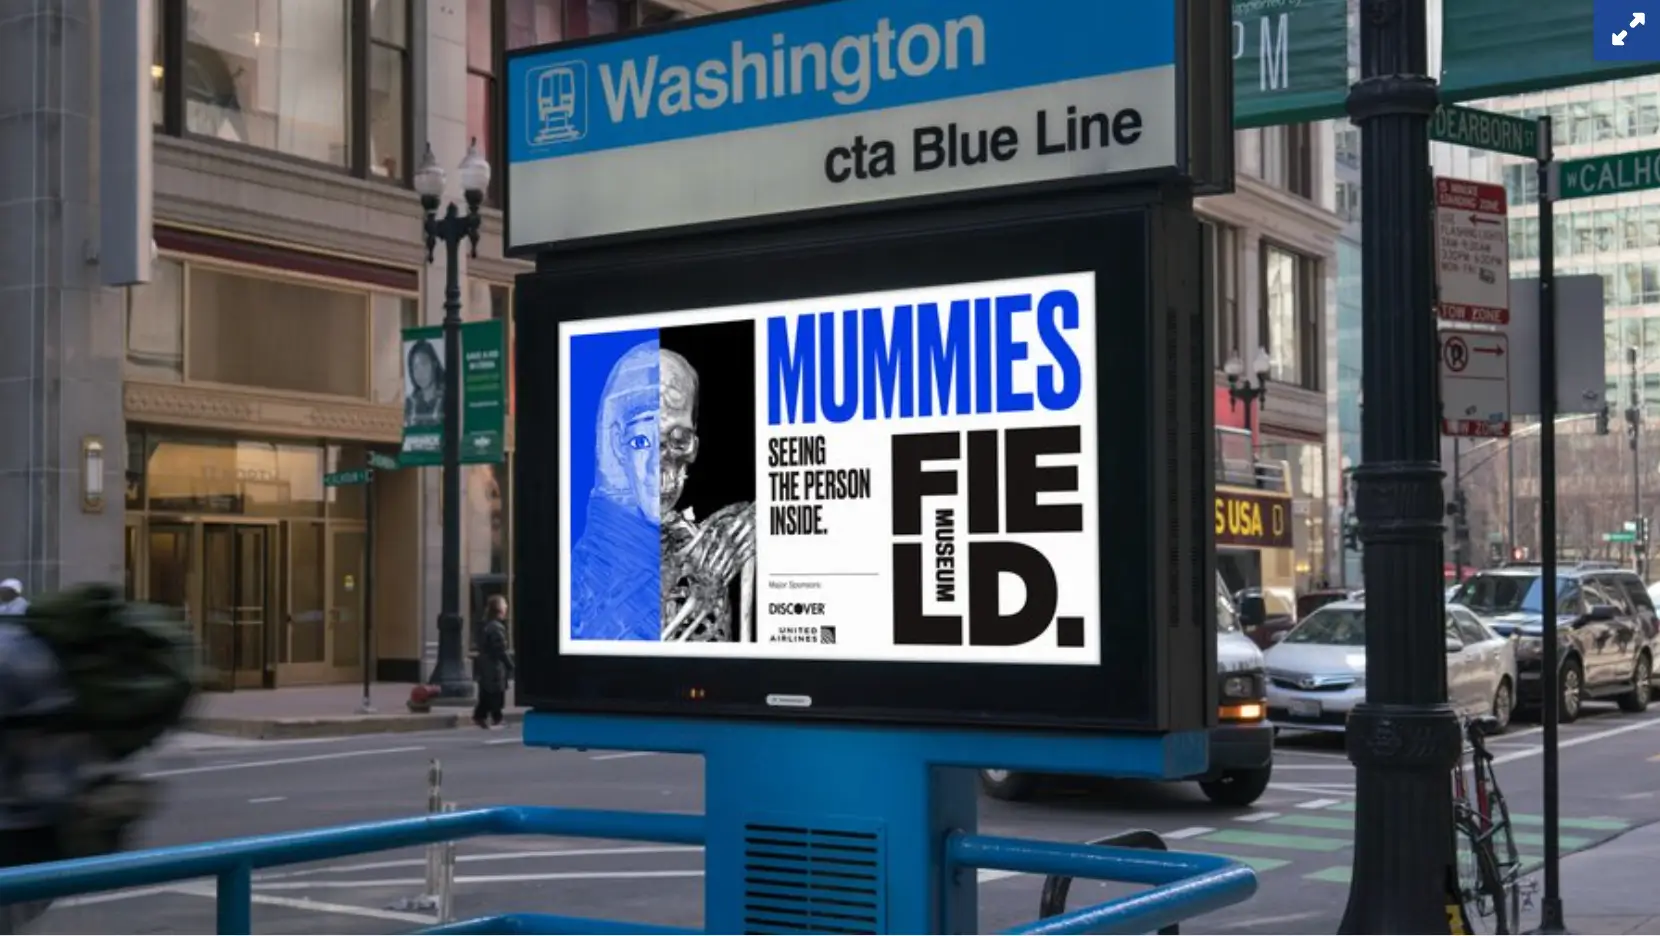 Esta imagem mostra a campanha do Field Museum de Chicago para sua exposição de múmias em 2018, combinando publicidade tradicional com conteúdo de mídia social para gerar interesse e atrair visitantes ao museu.